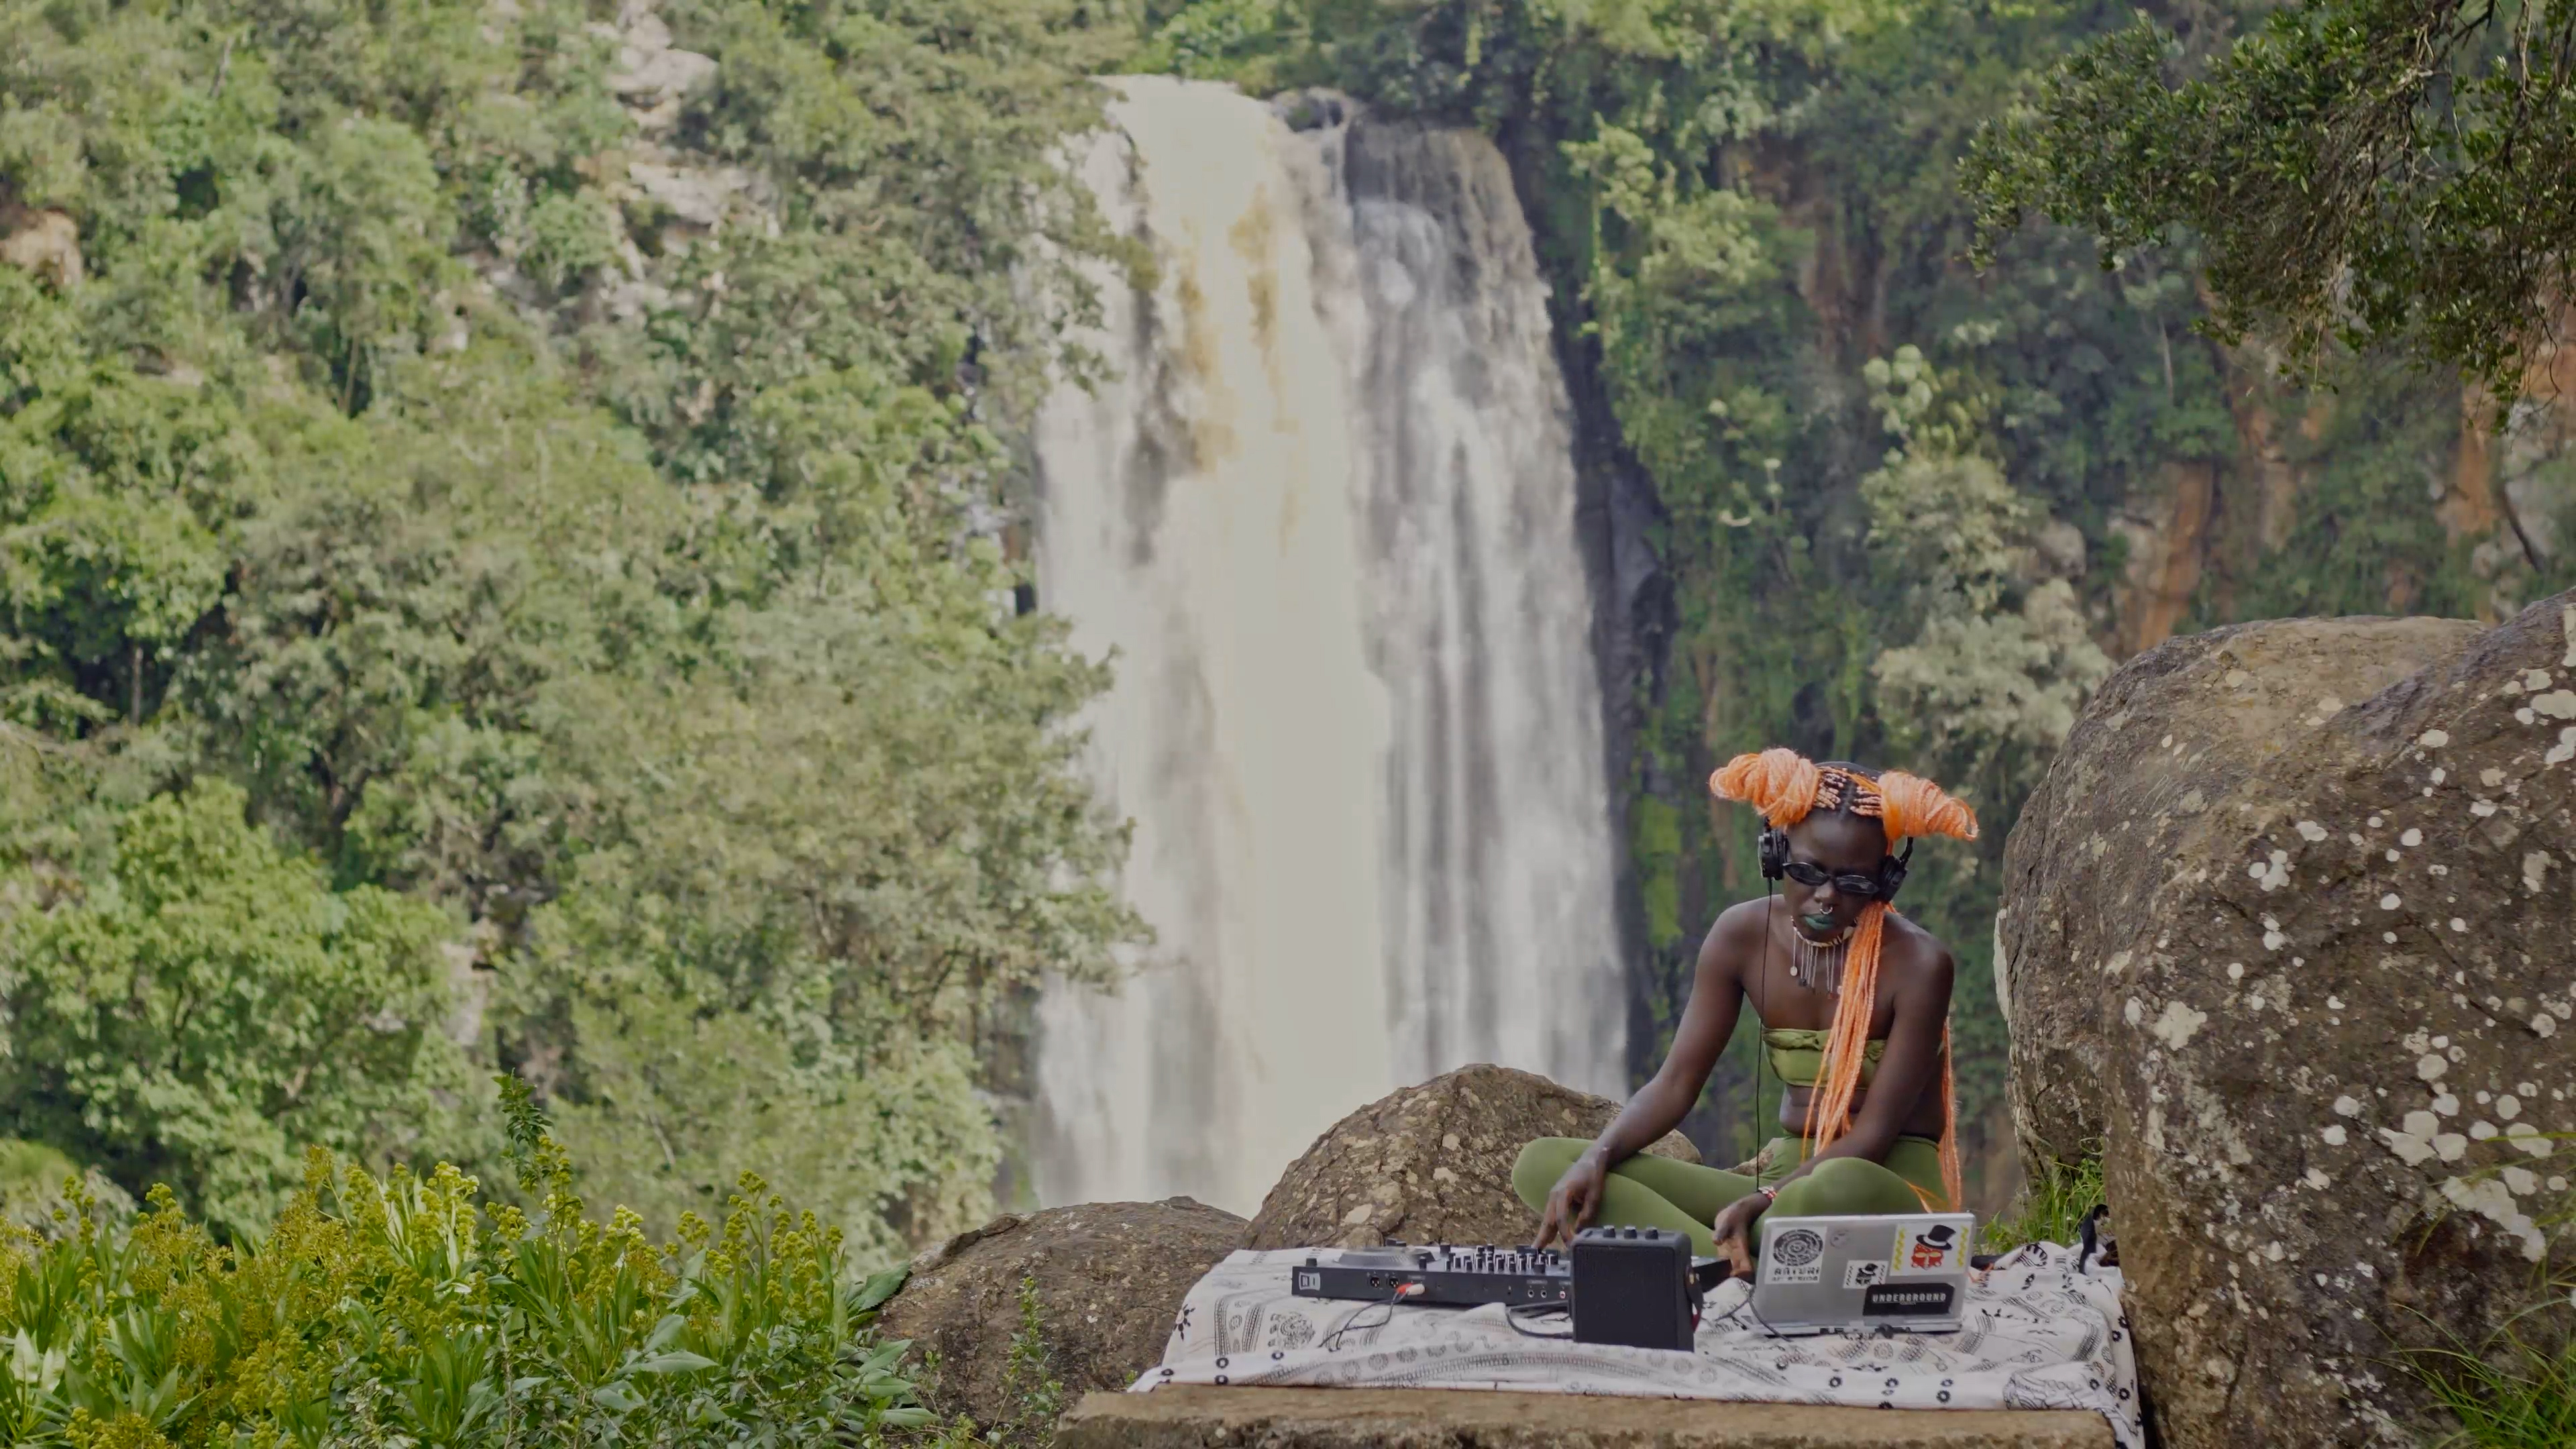 Pour l'œuvre d'art « Fronts chauds » de Kent Chan, Makossiri joue de la musique près d'une chute d'eau tropicale. Makossiri est une musicienne et une DJ.